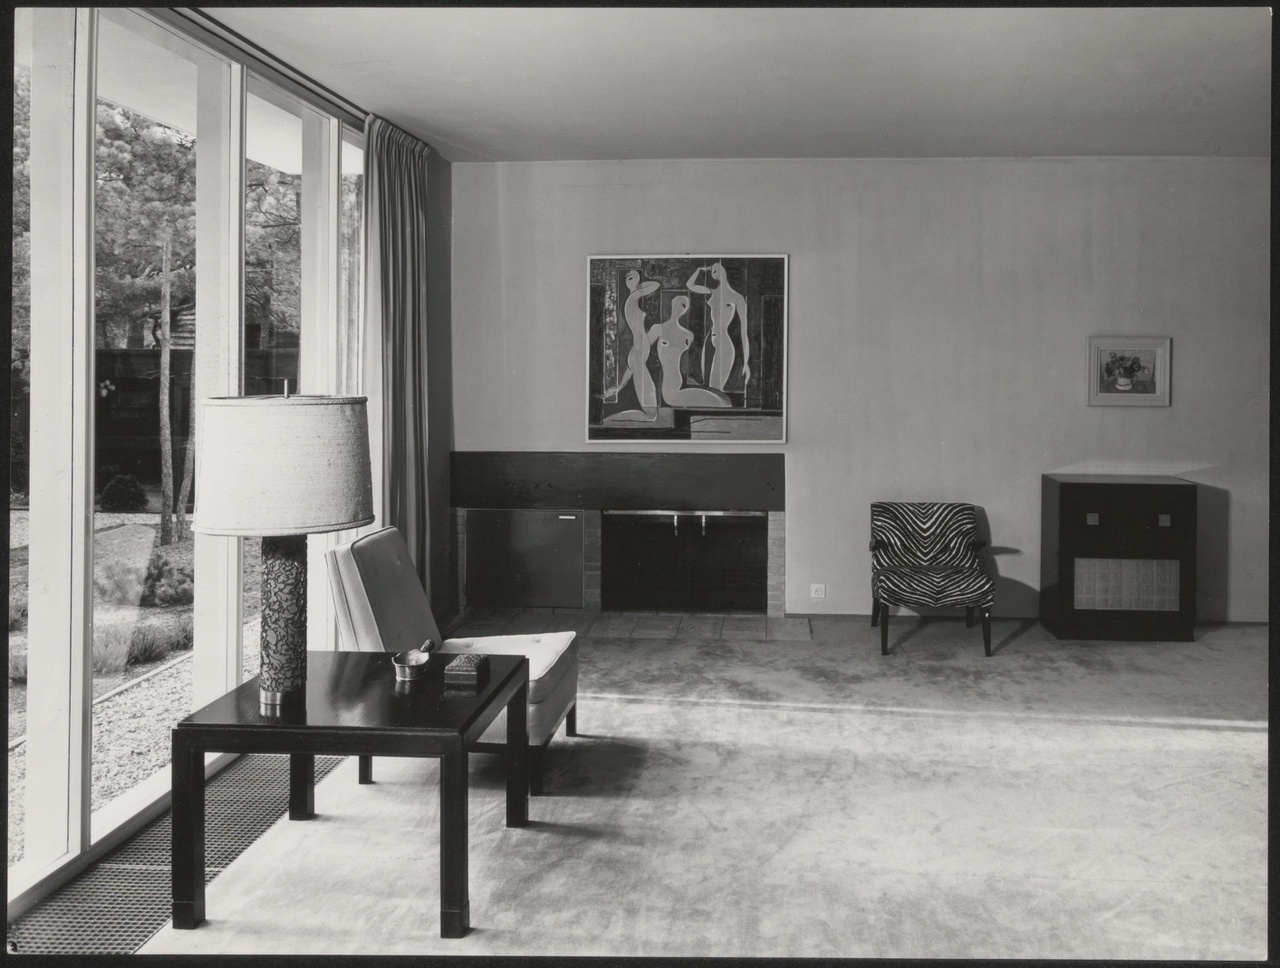 Afbeelding van woning Klaassen, ca.1953, interieur zithoek met open haard